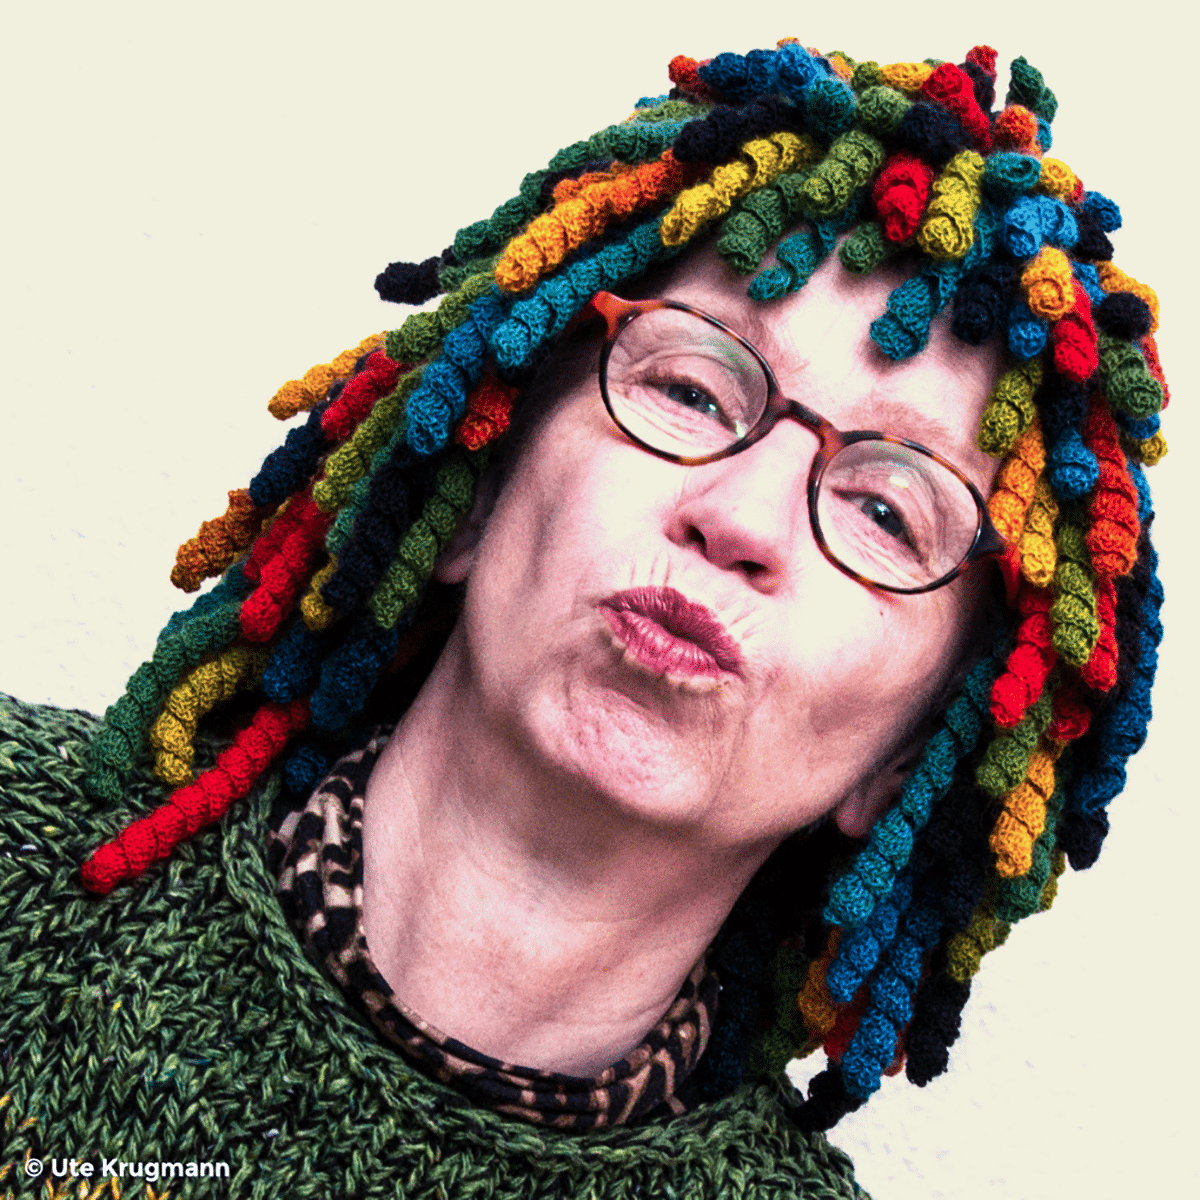 Ute Krugmann with wool wig